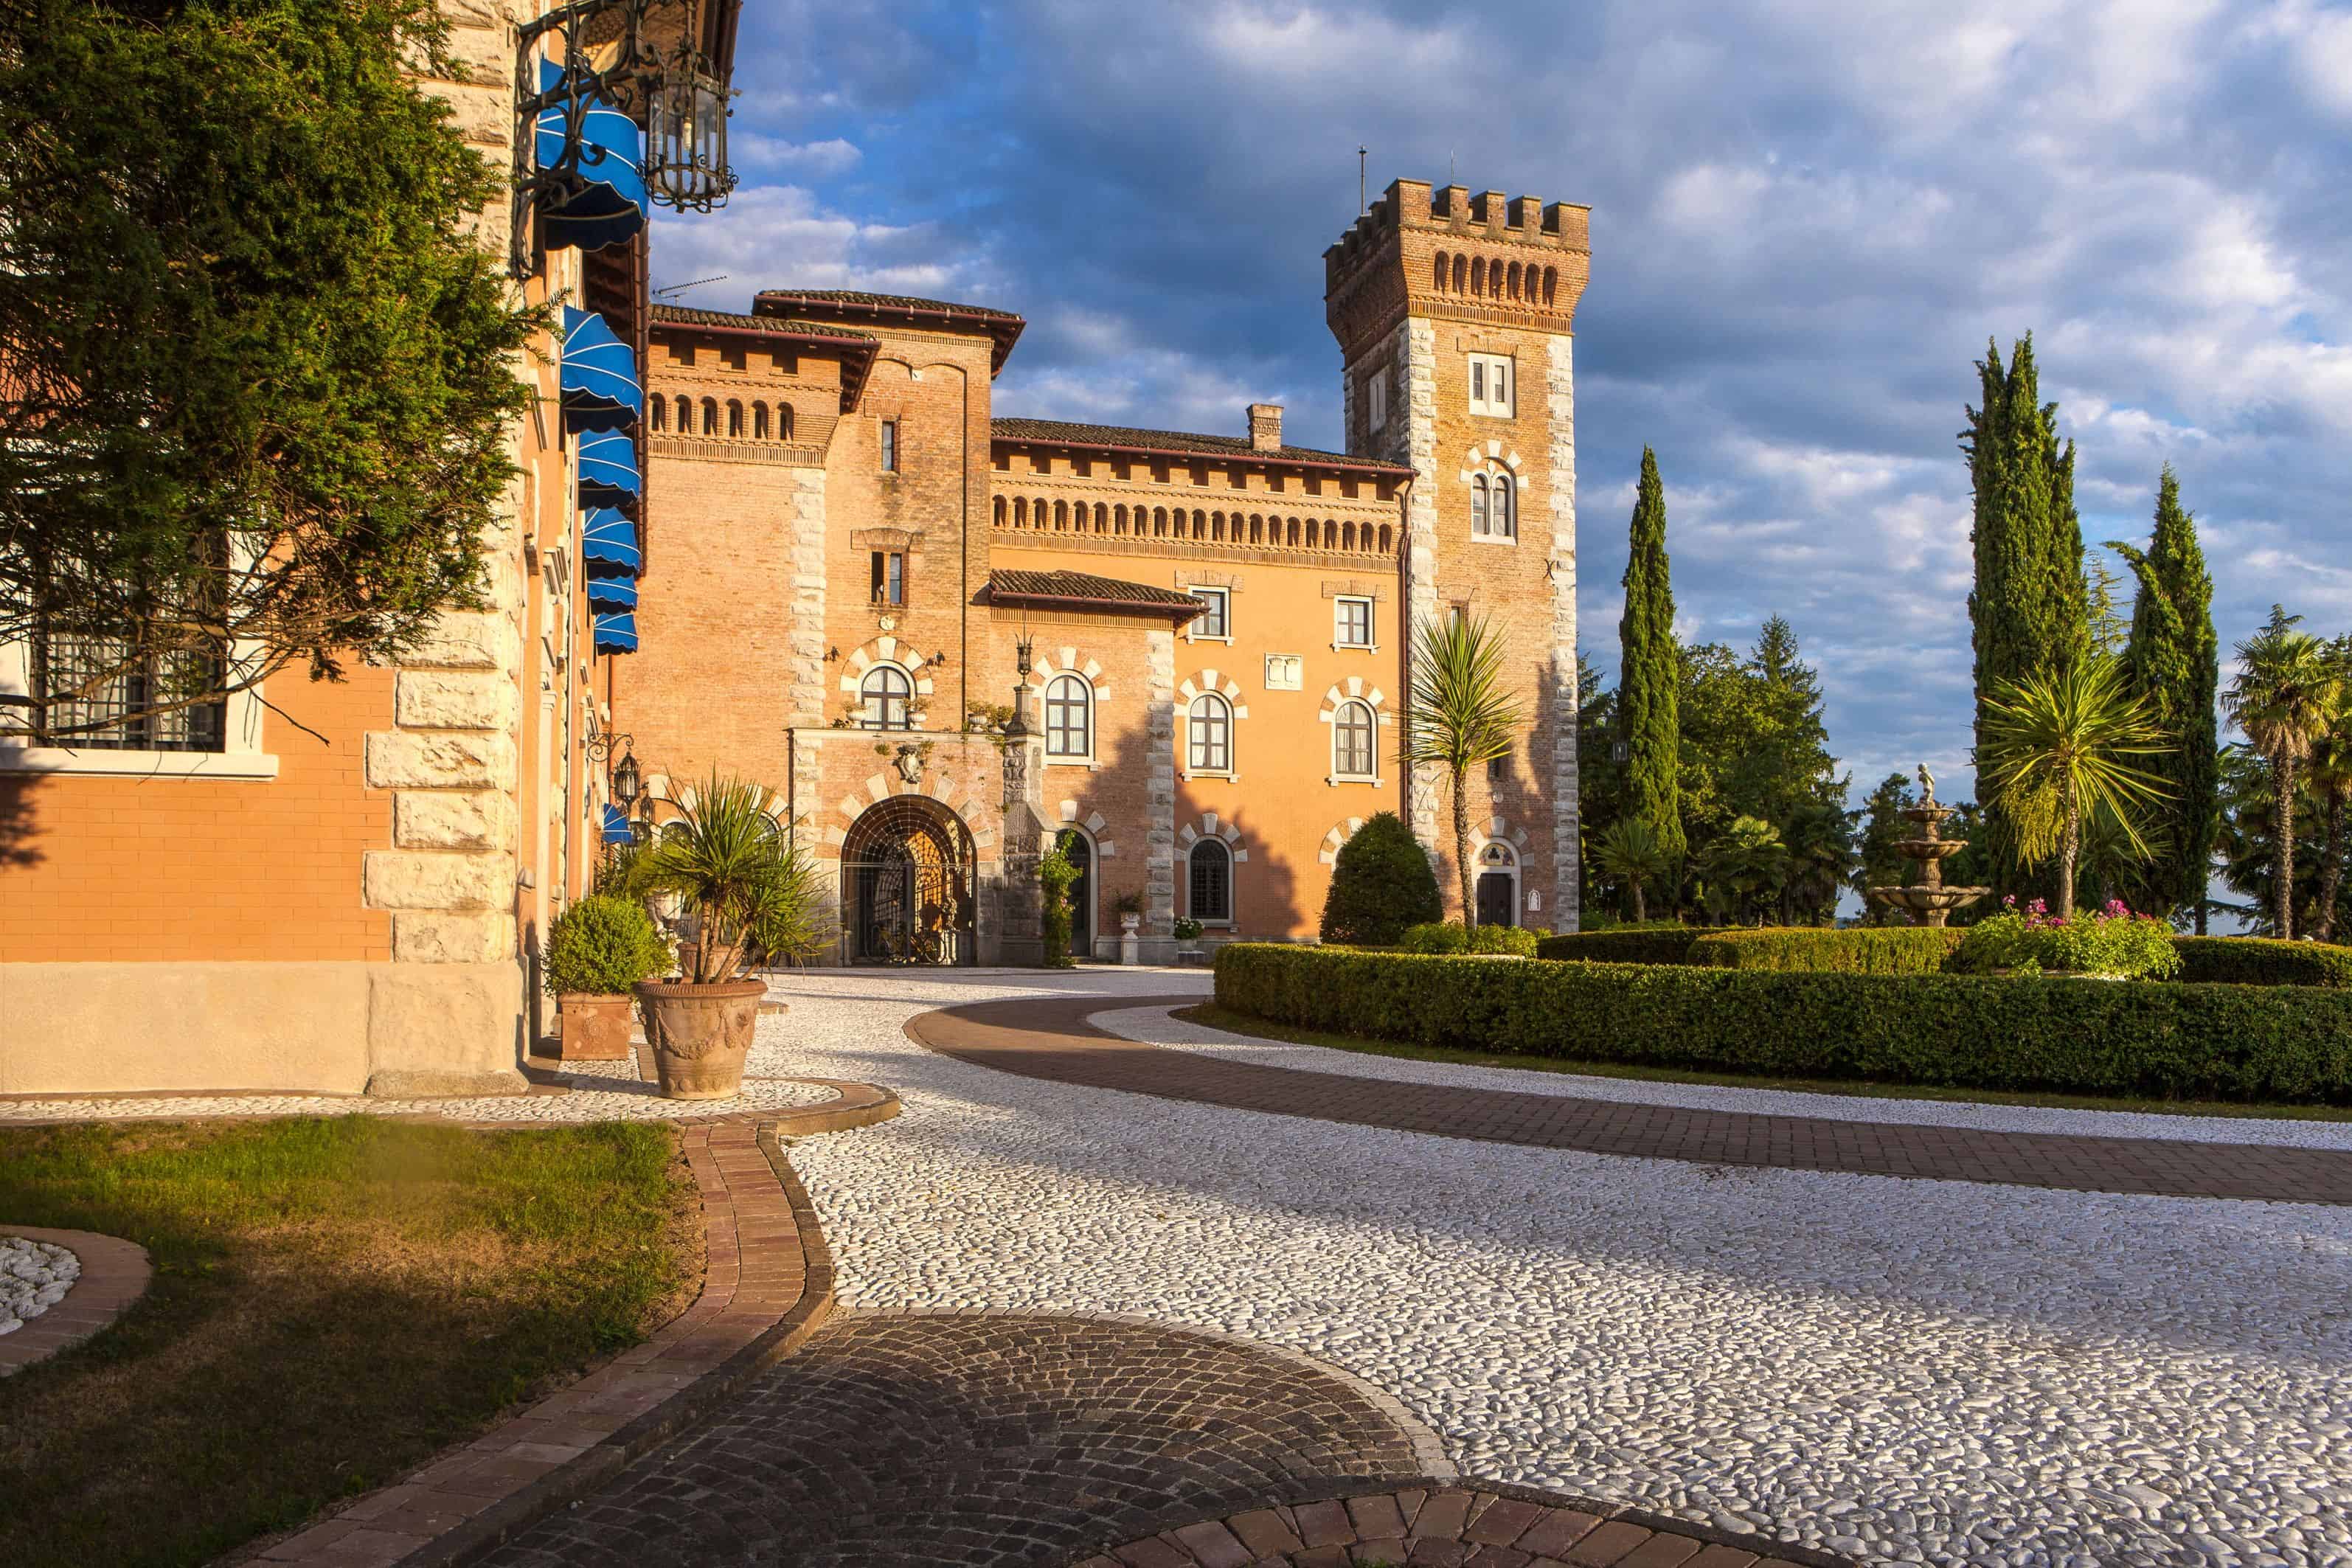 Castello di Spessa Golf & Wine Resort of Capriva, to discover the villages of Friuli